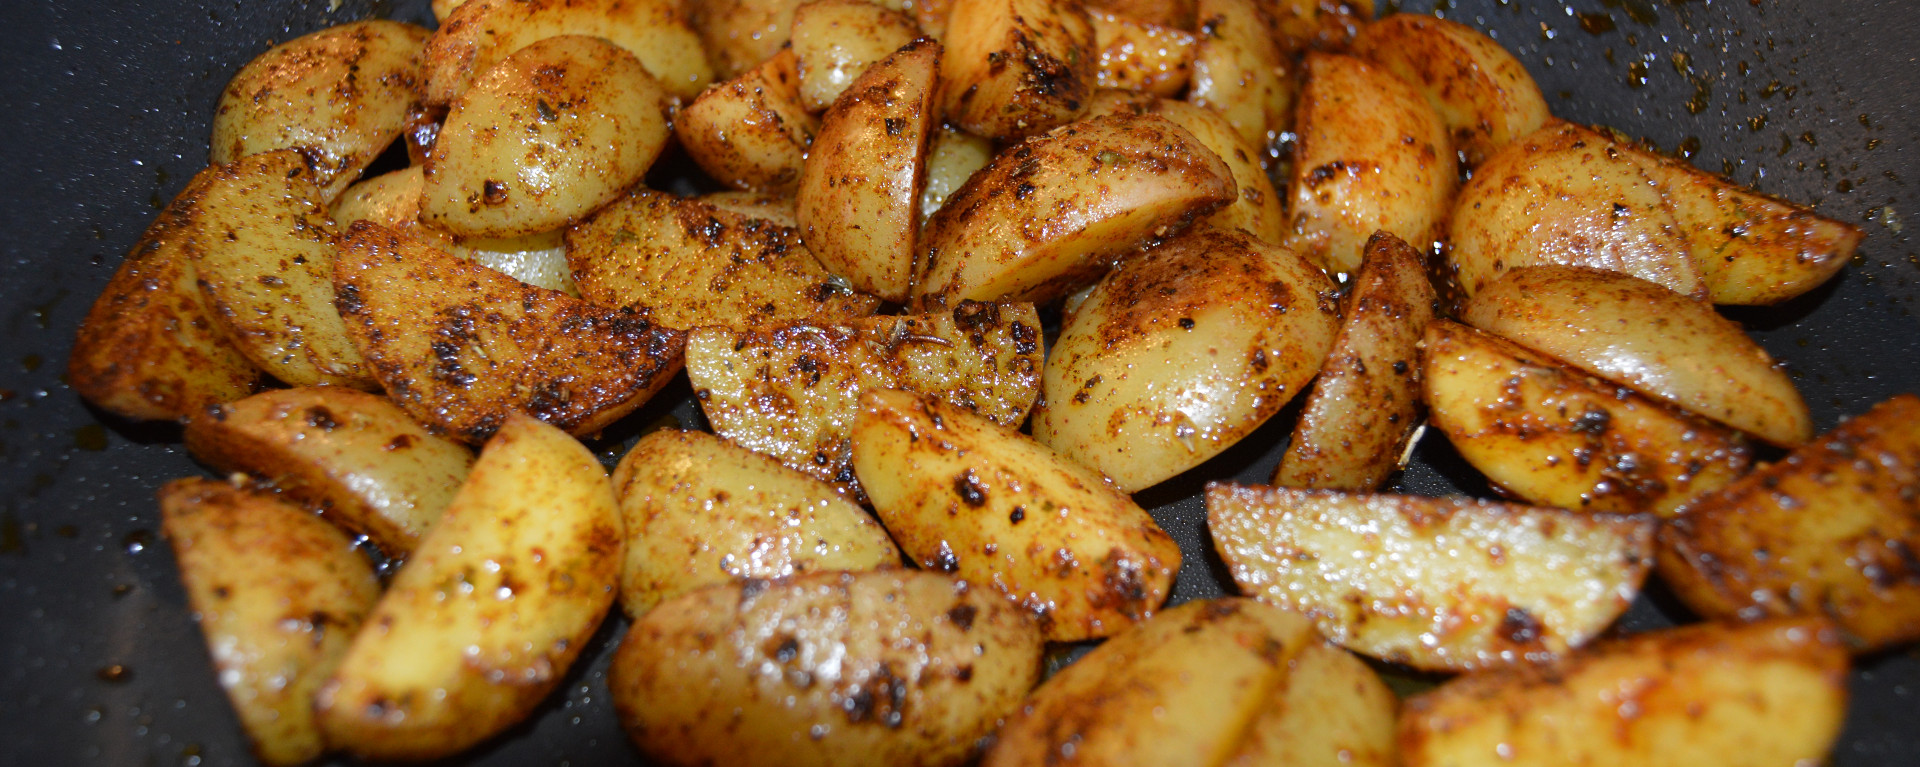 ChefNorway's Spicy Potatoes